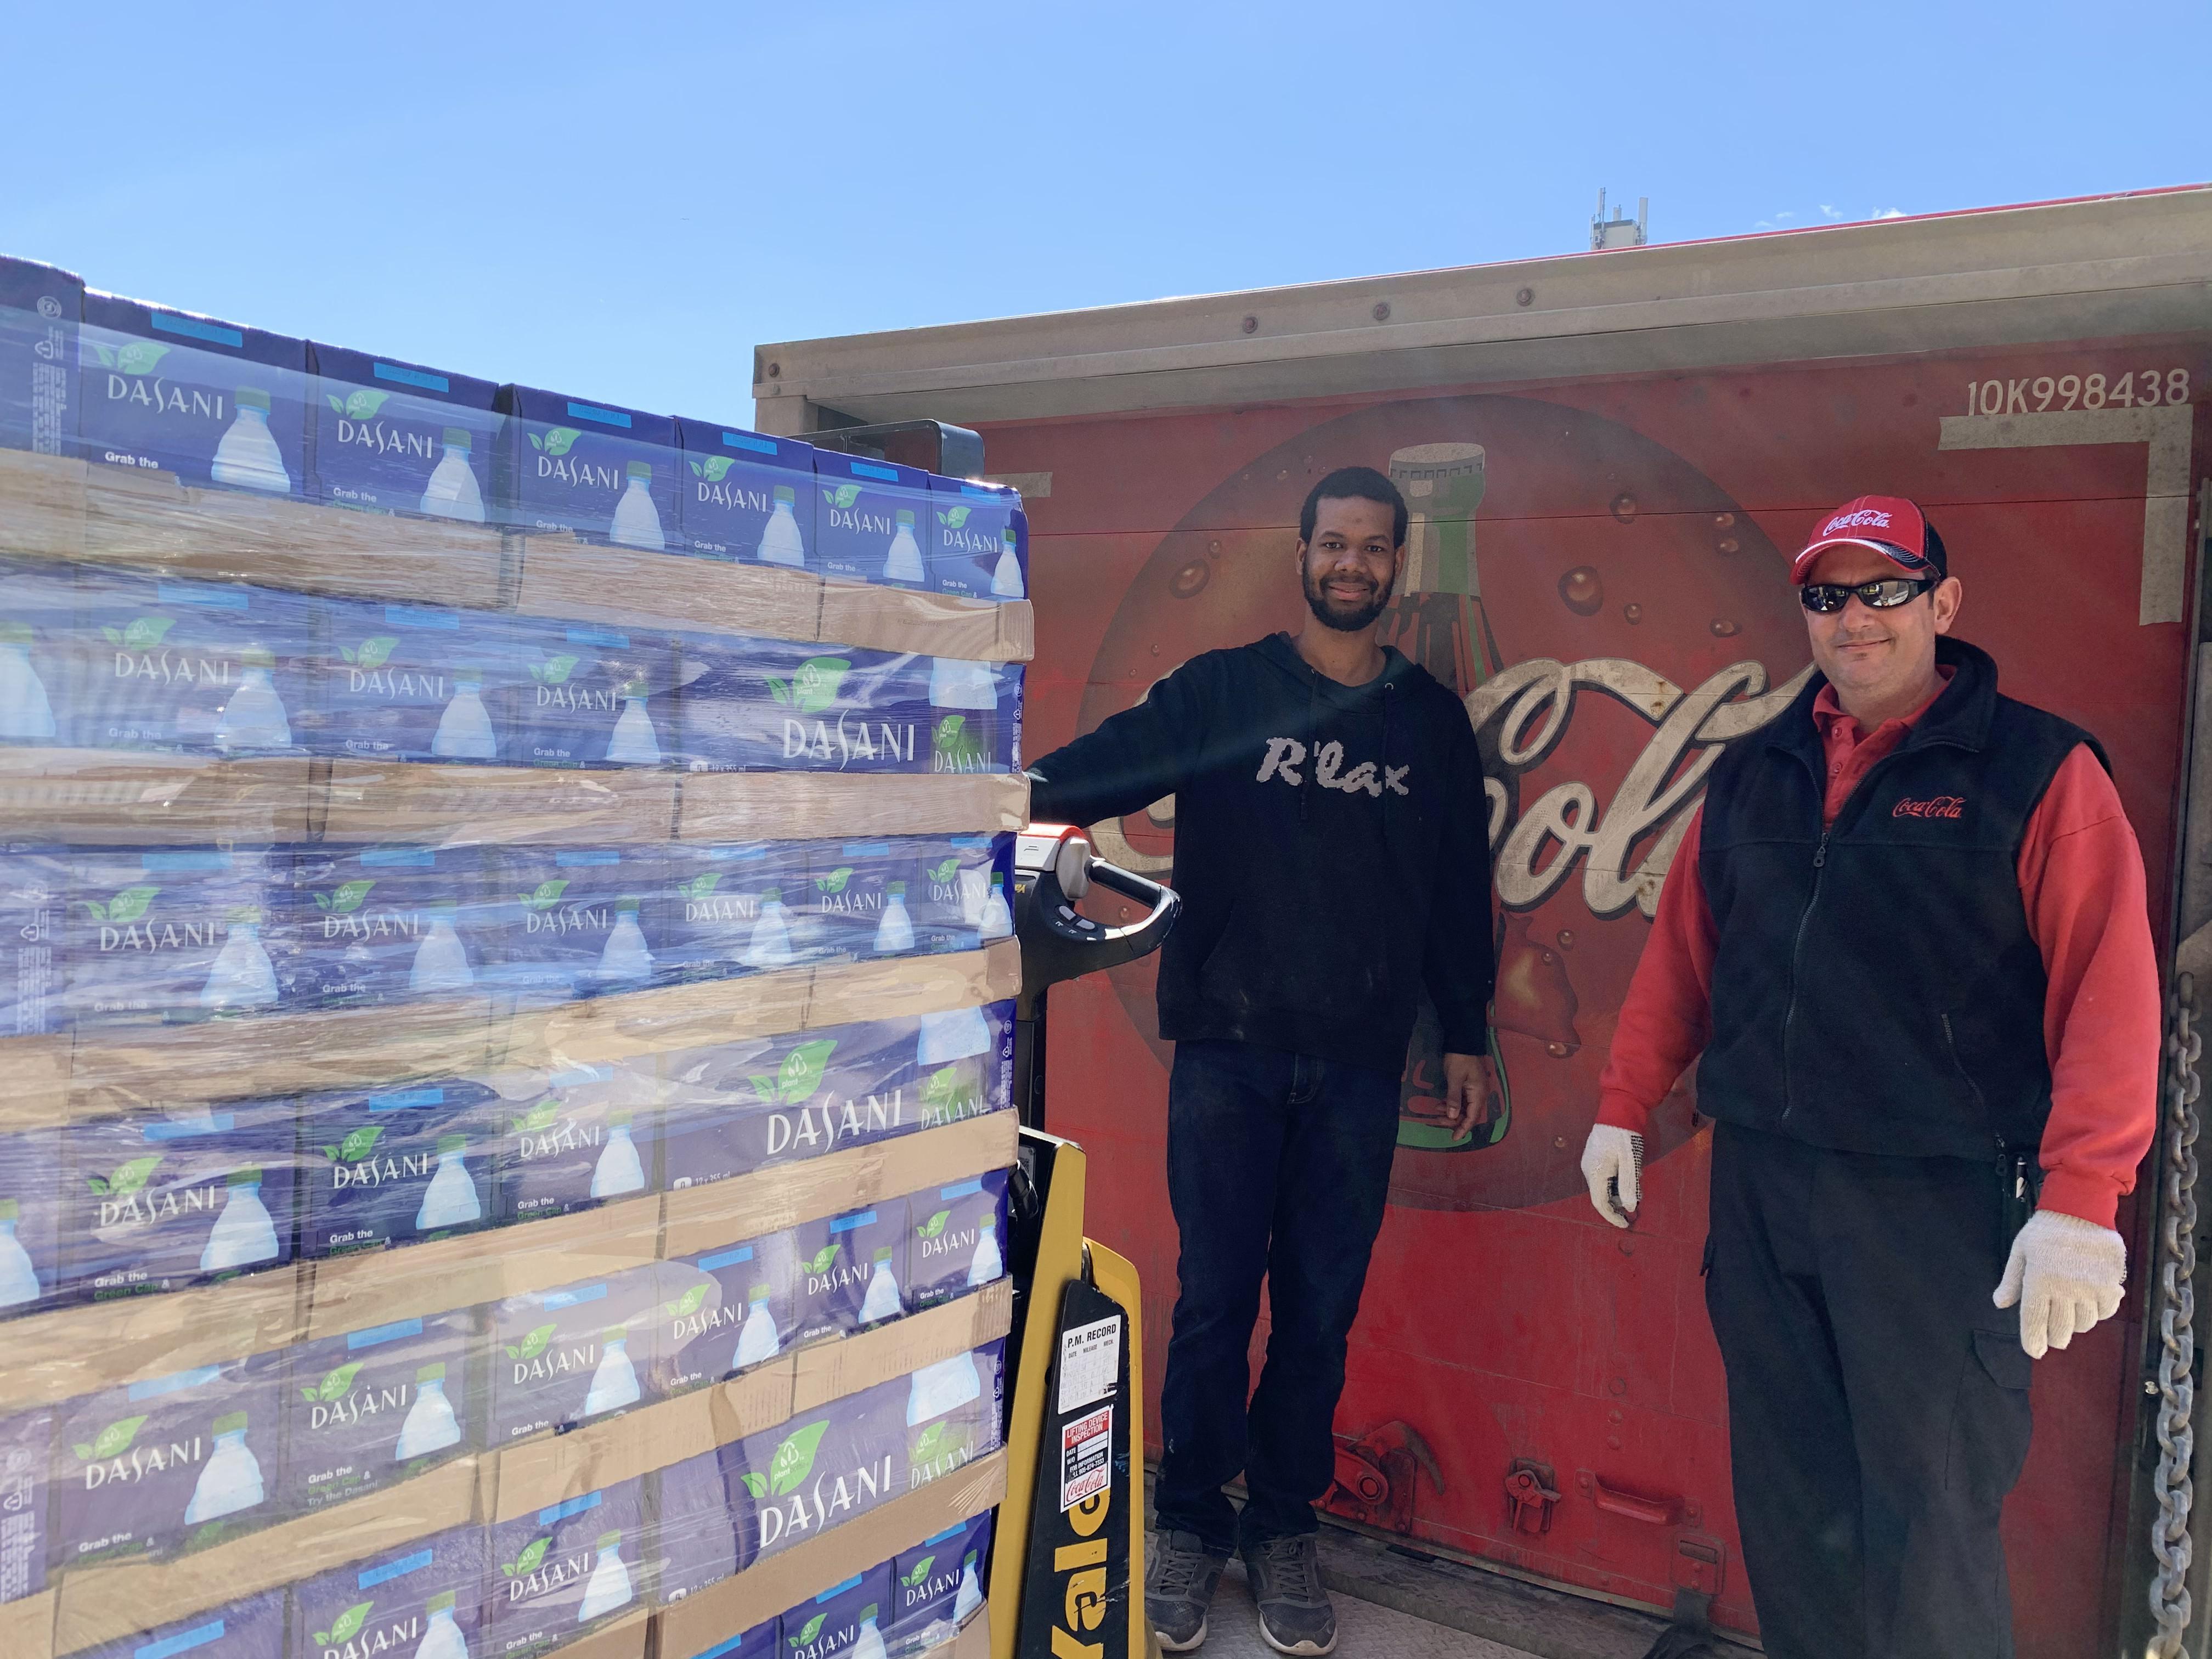 Deux hommes se tiennent sur un quai de chargement devant un camion Coca-Cola, un transpalette avec une pile de palettes d'eau Dasani est au premier plan